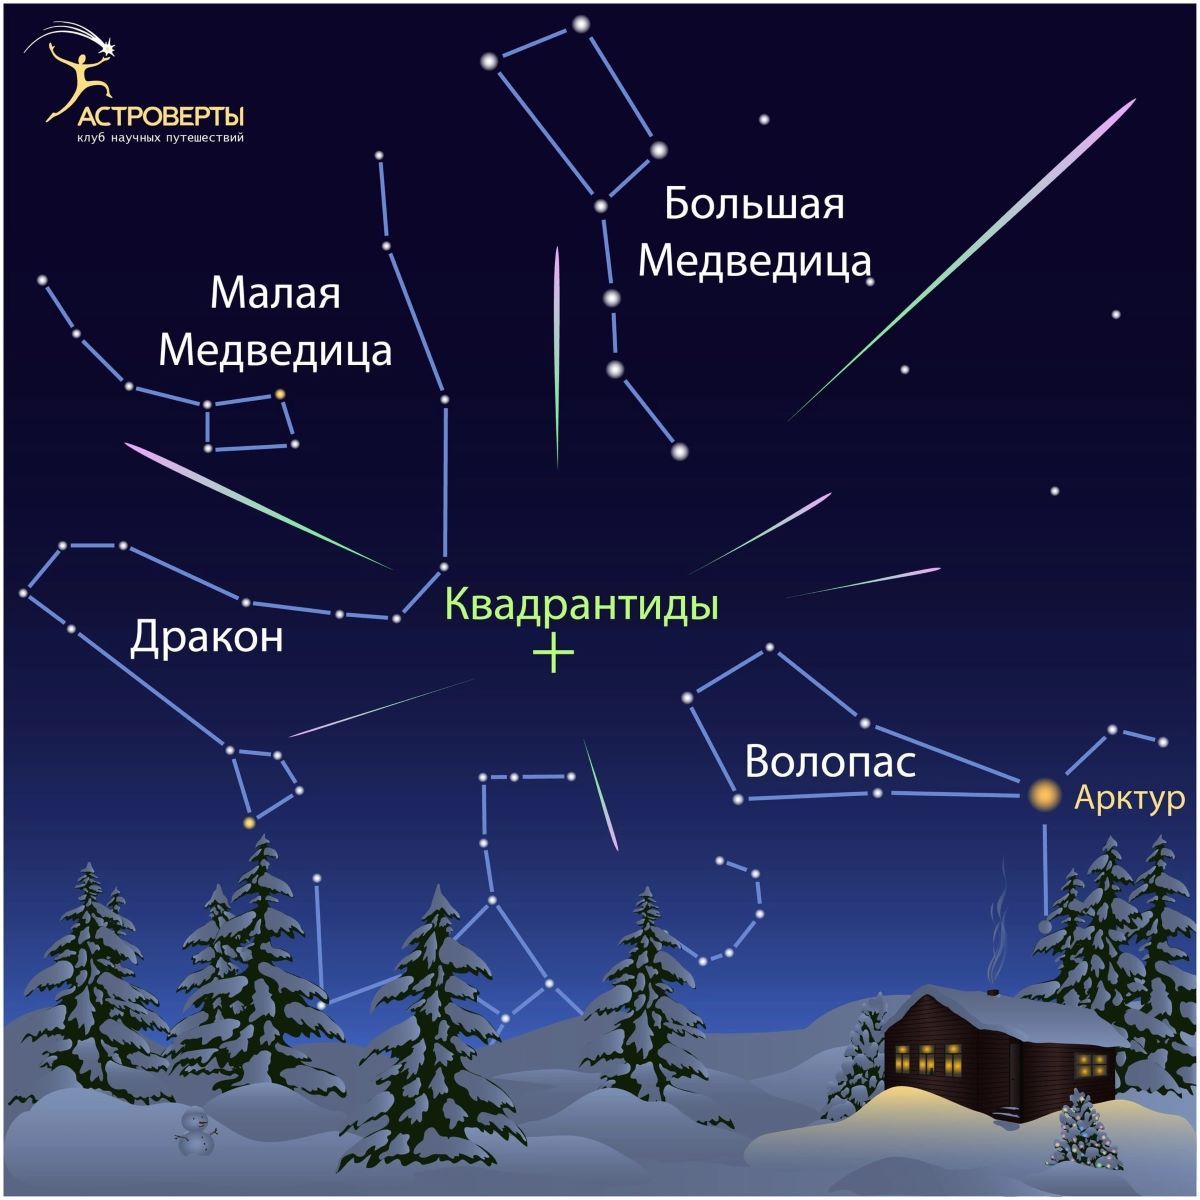 В ночь с третьего на четвертое января прольется первый новогодний звездопад